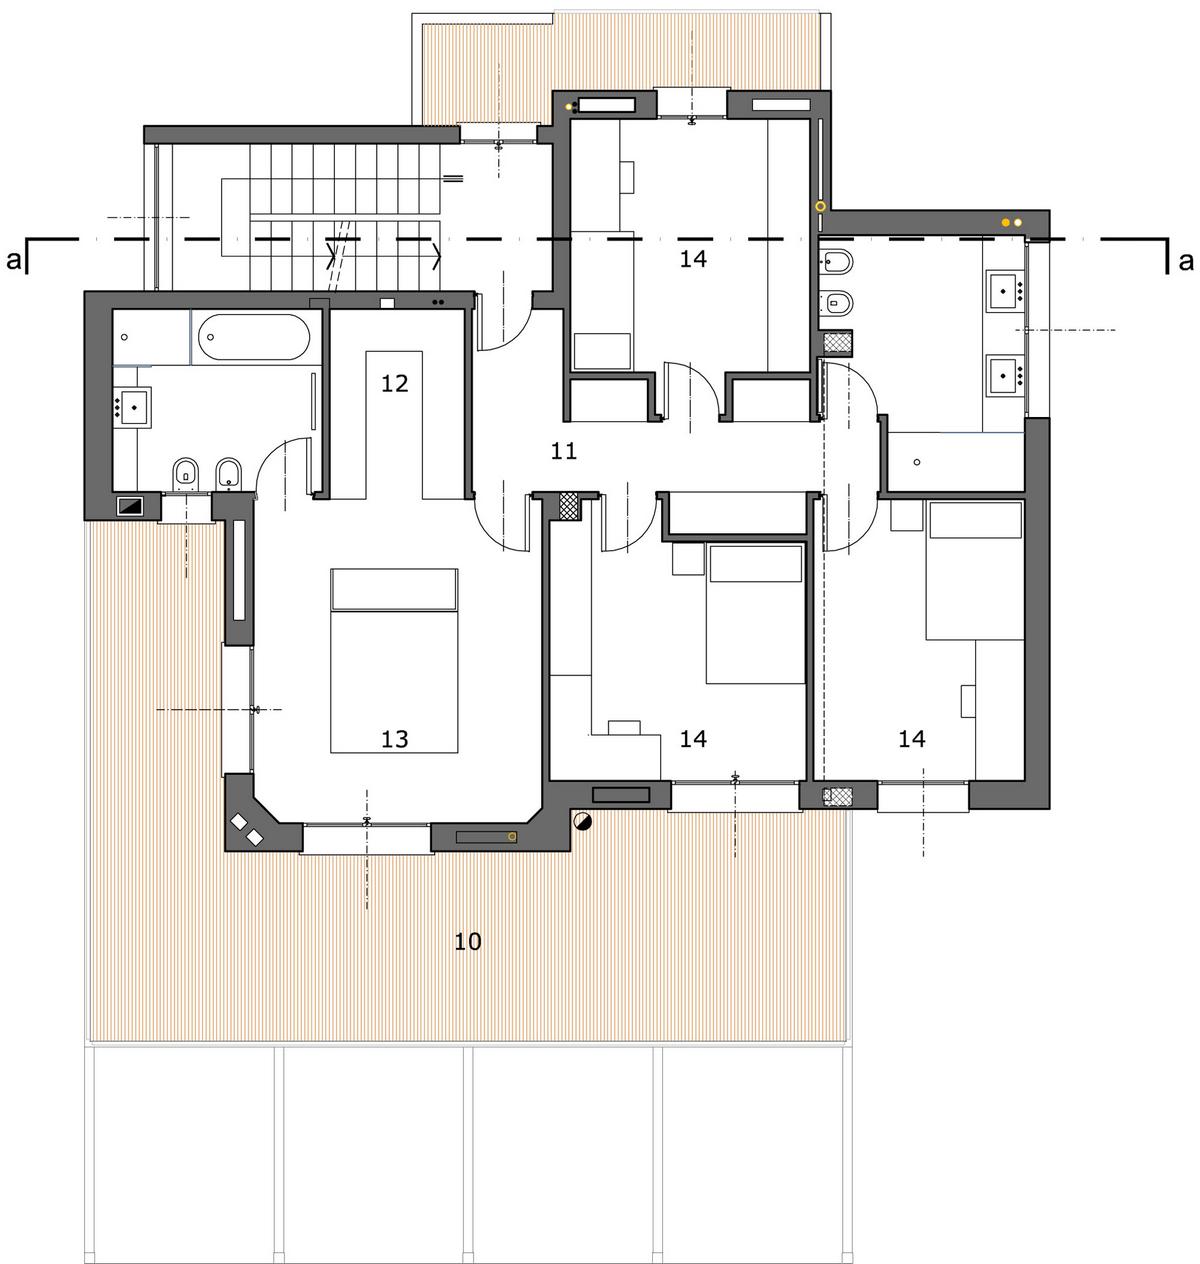 House RV, Federico Delrosso Architects, дом в провинции Бьелла, частный дом в Италии, дом в стиле минимализма, бассейн на крыше дома, терраса с бассейном